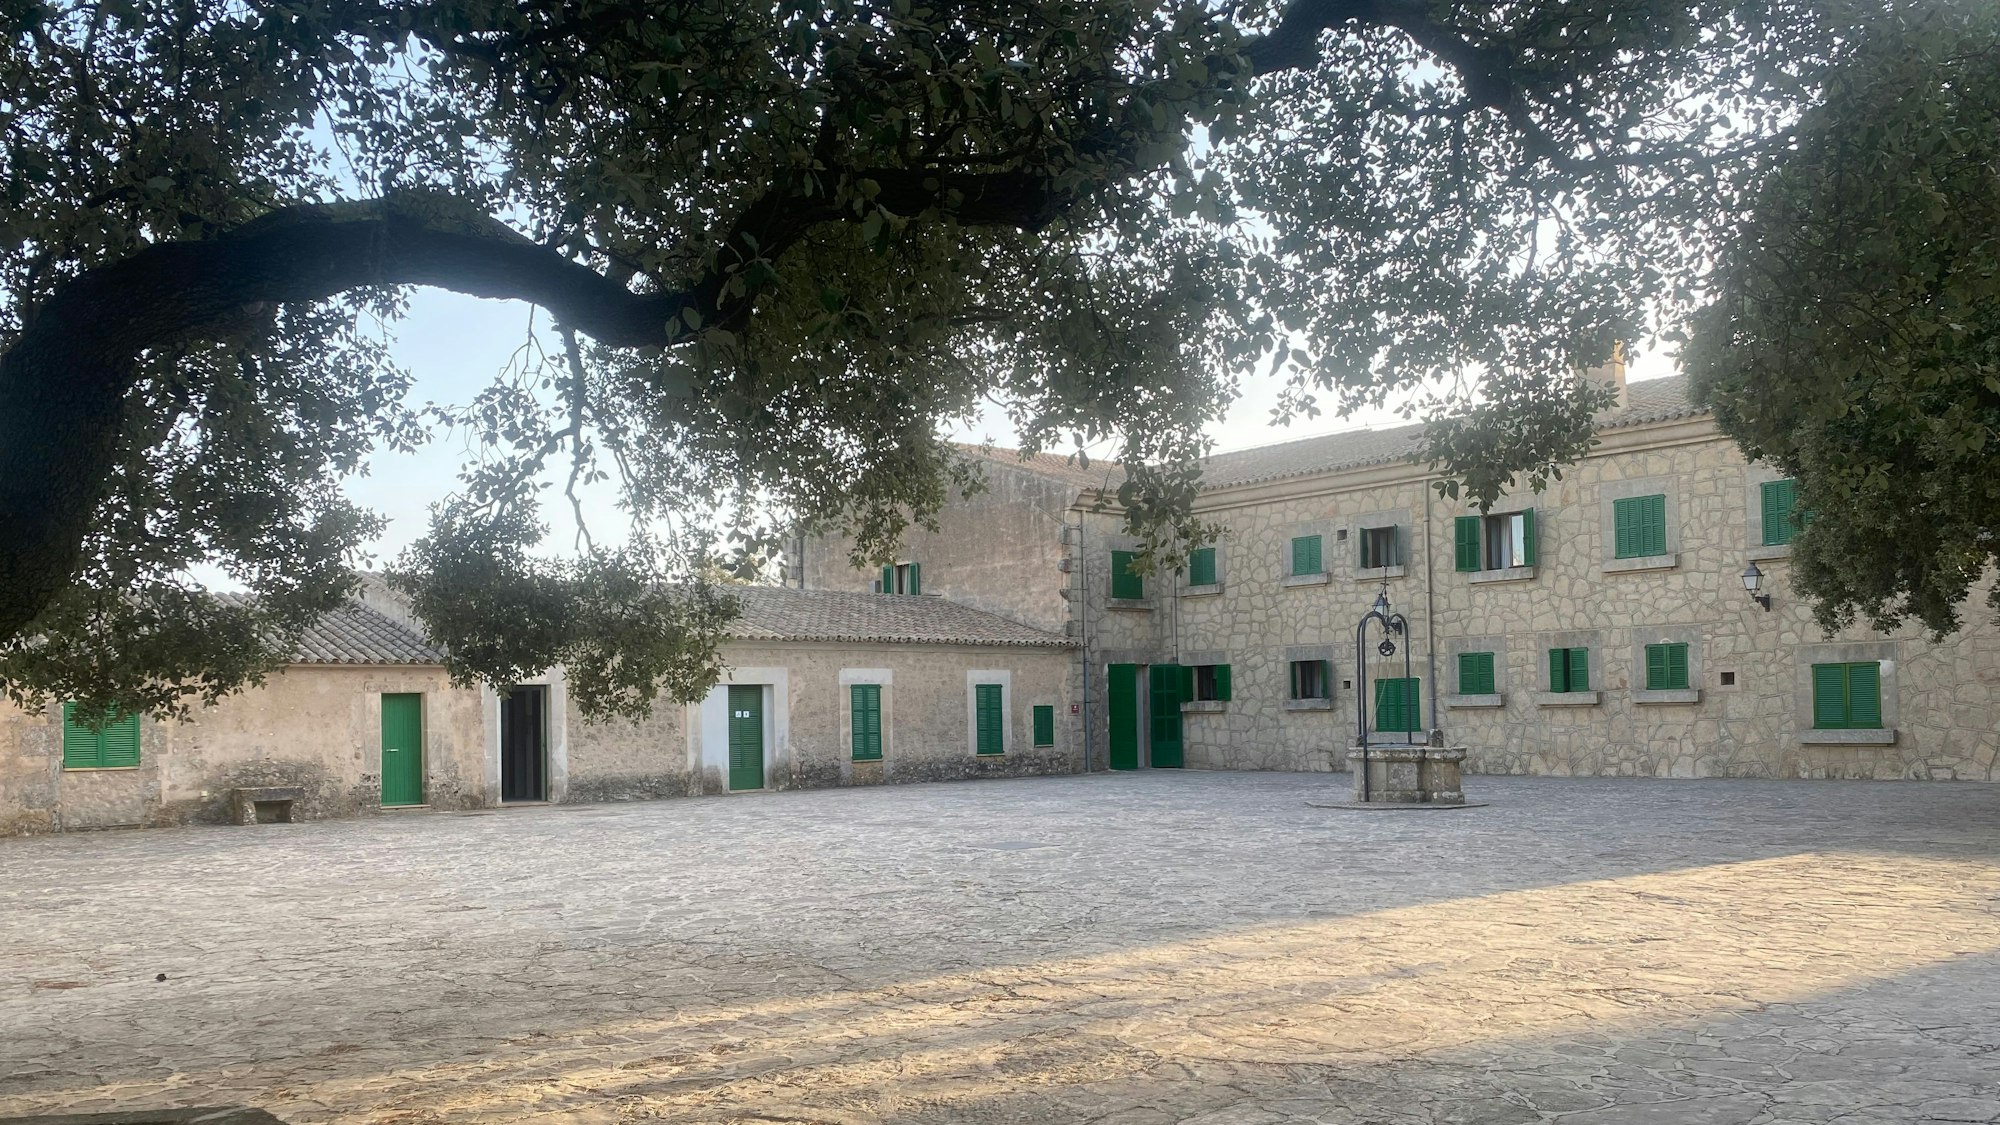 Der Innenhof des Kloster Randa auf Mallorca, aufgenommen am 26. Juli 2022.